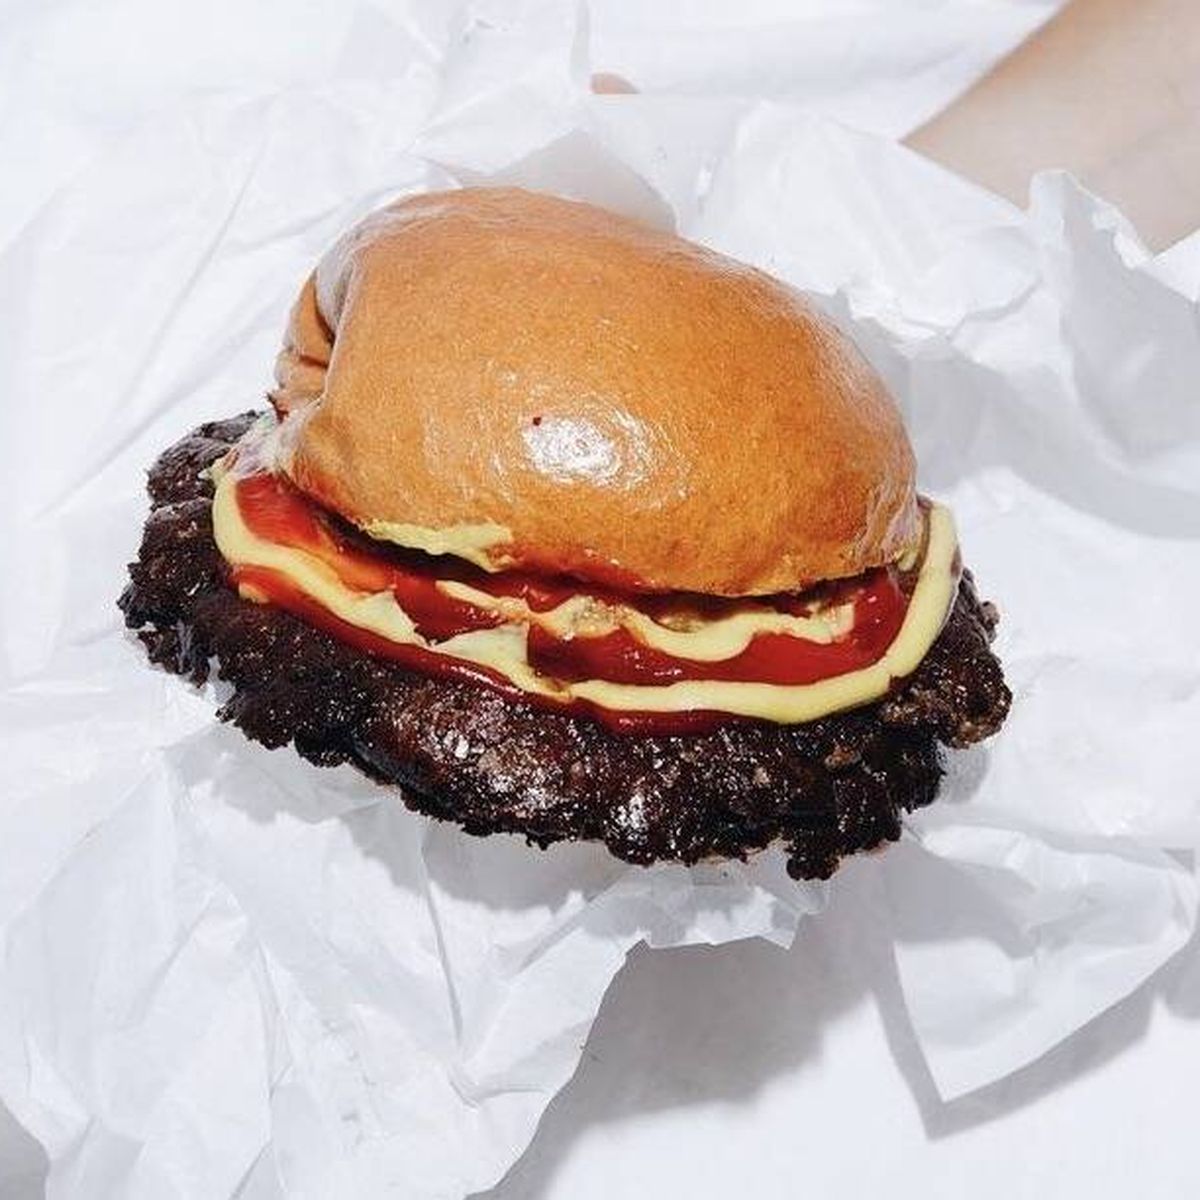 Descubre las Smash Burgers la forma más americana de comer hamburguesas